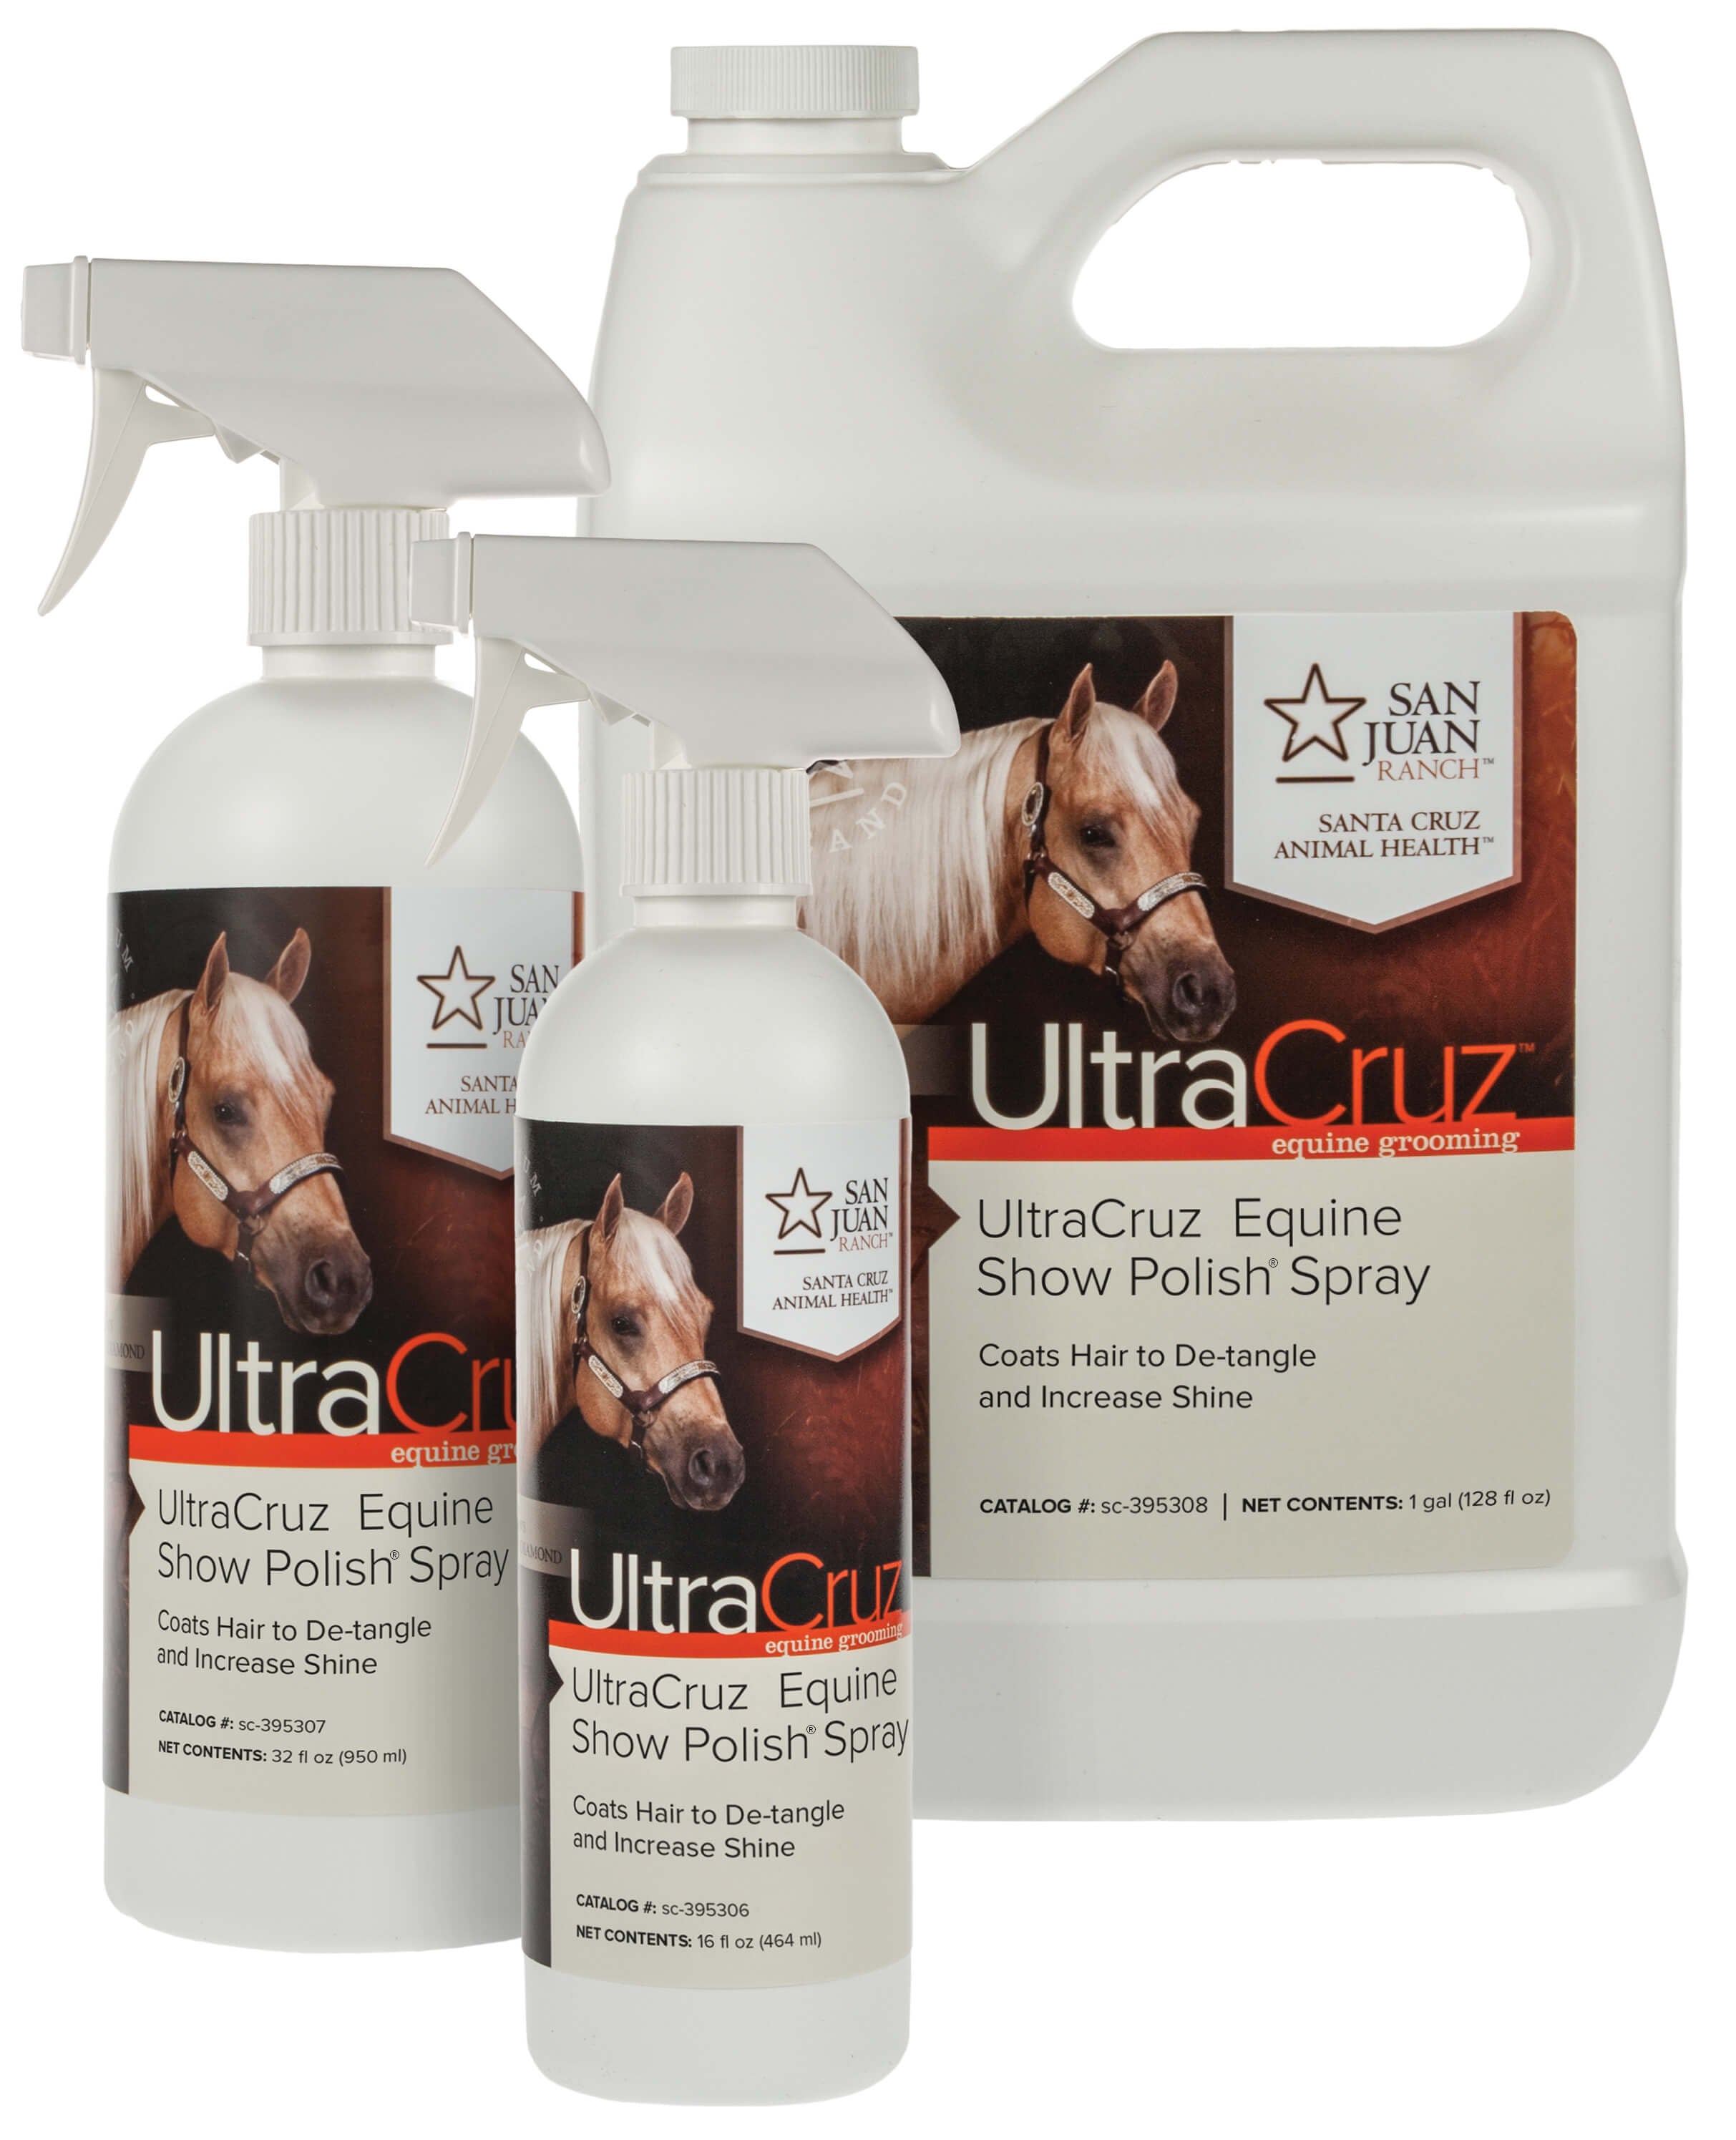 Ultra Cruz Equine Show Polish Spray